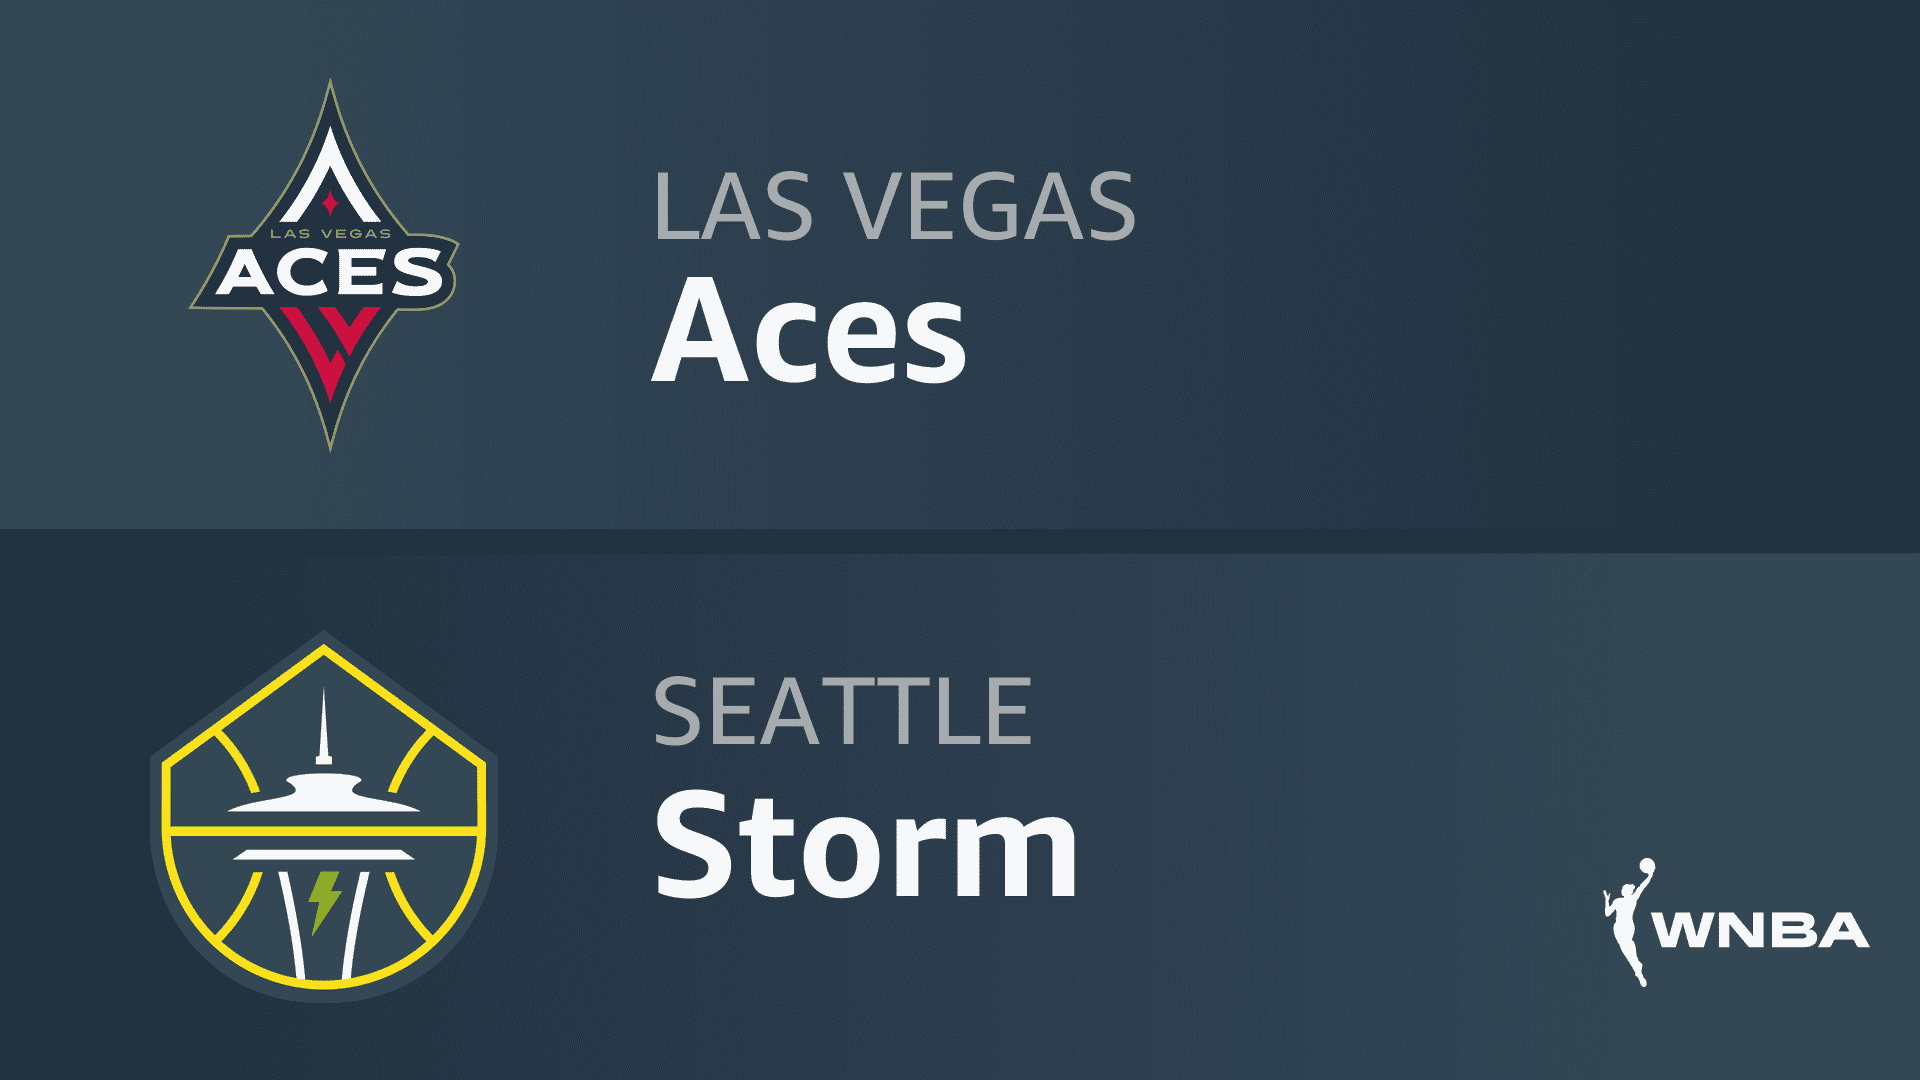 Las Vegas Aces vs Seattle Storm Game 3 Prediction 9/4/22